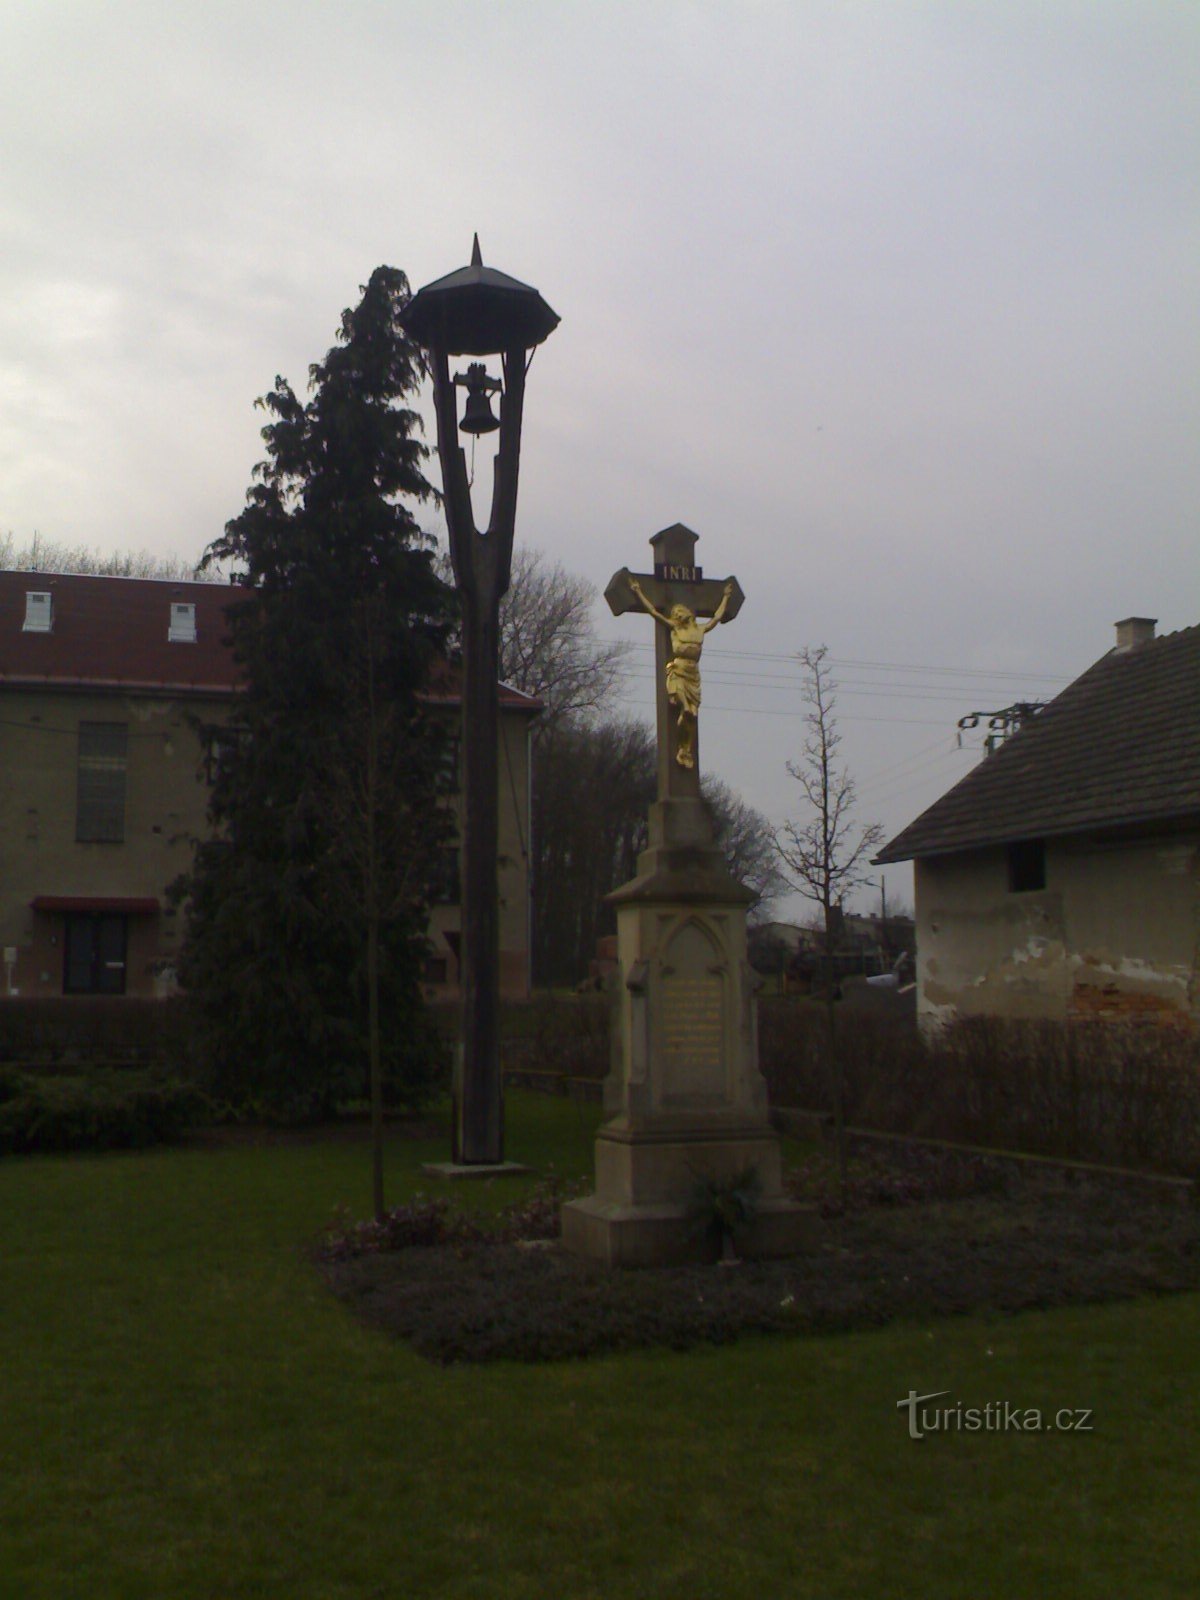 Jílovice - dzwonnica i pomnik ukrzyżowania